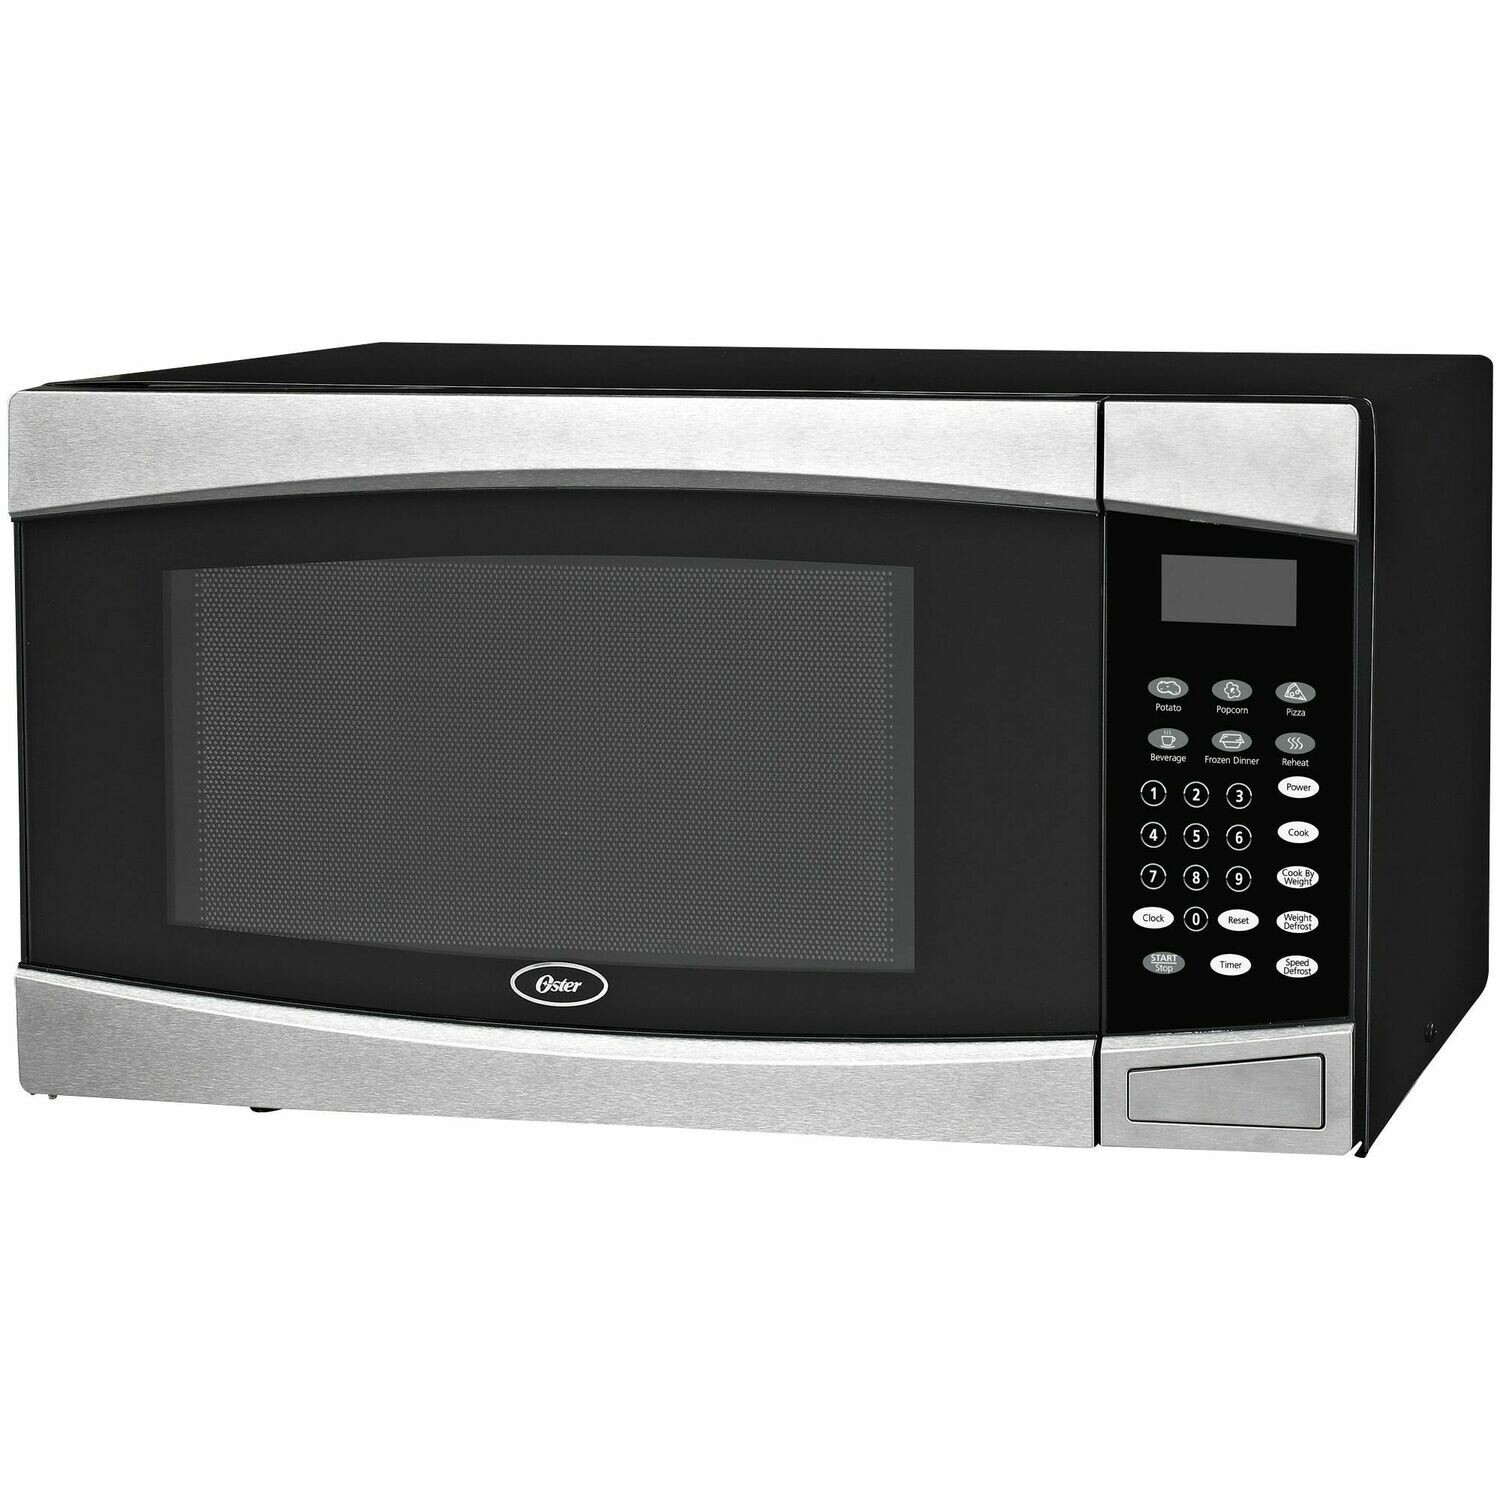 1.6 Cu. Ft. Microwave